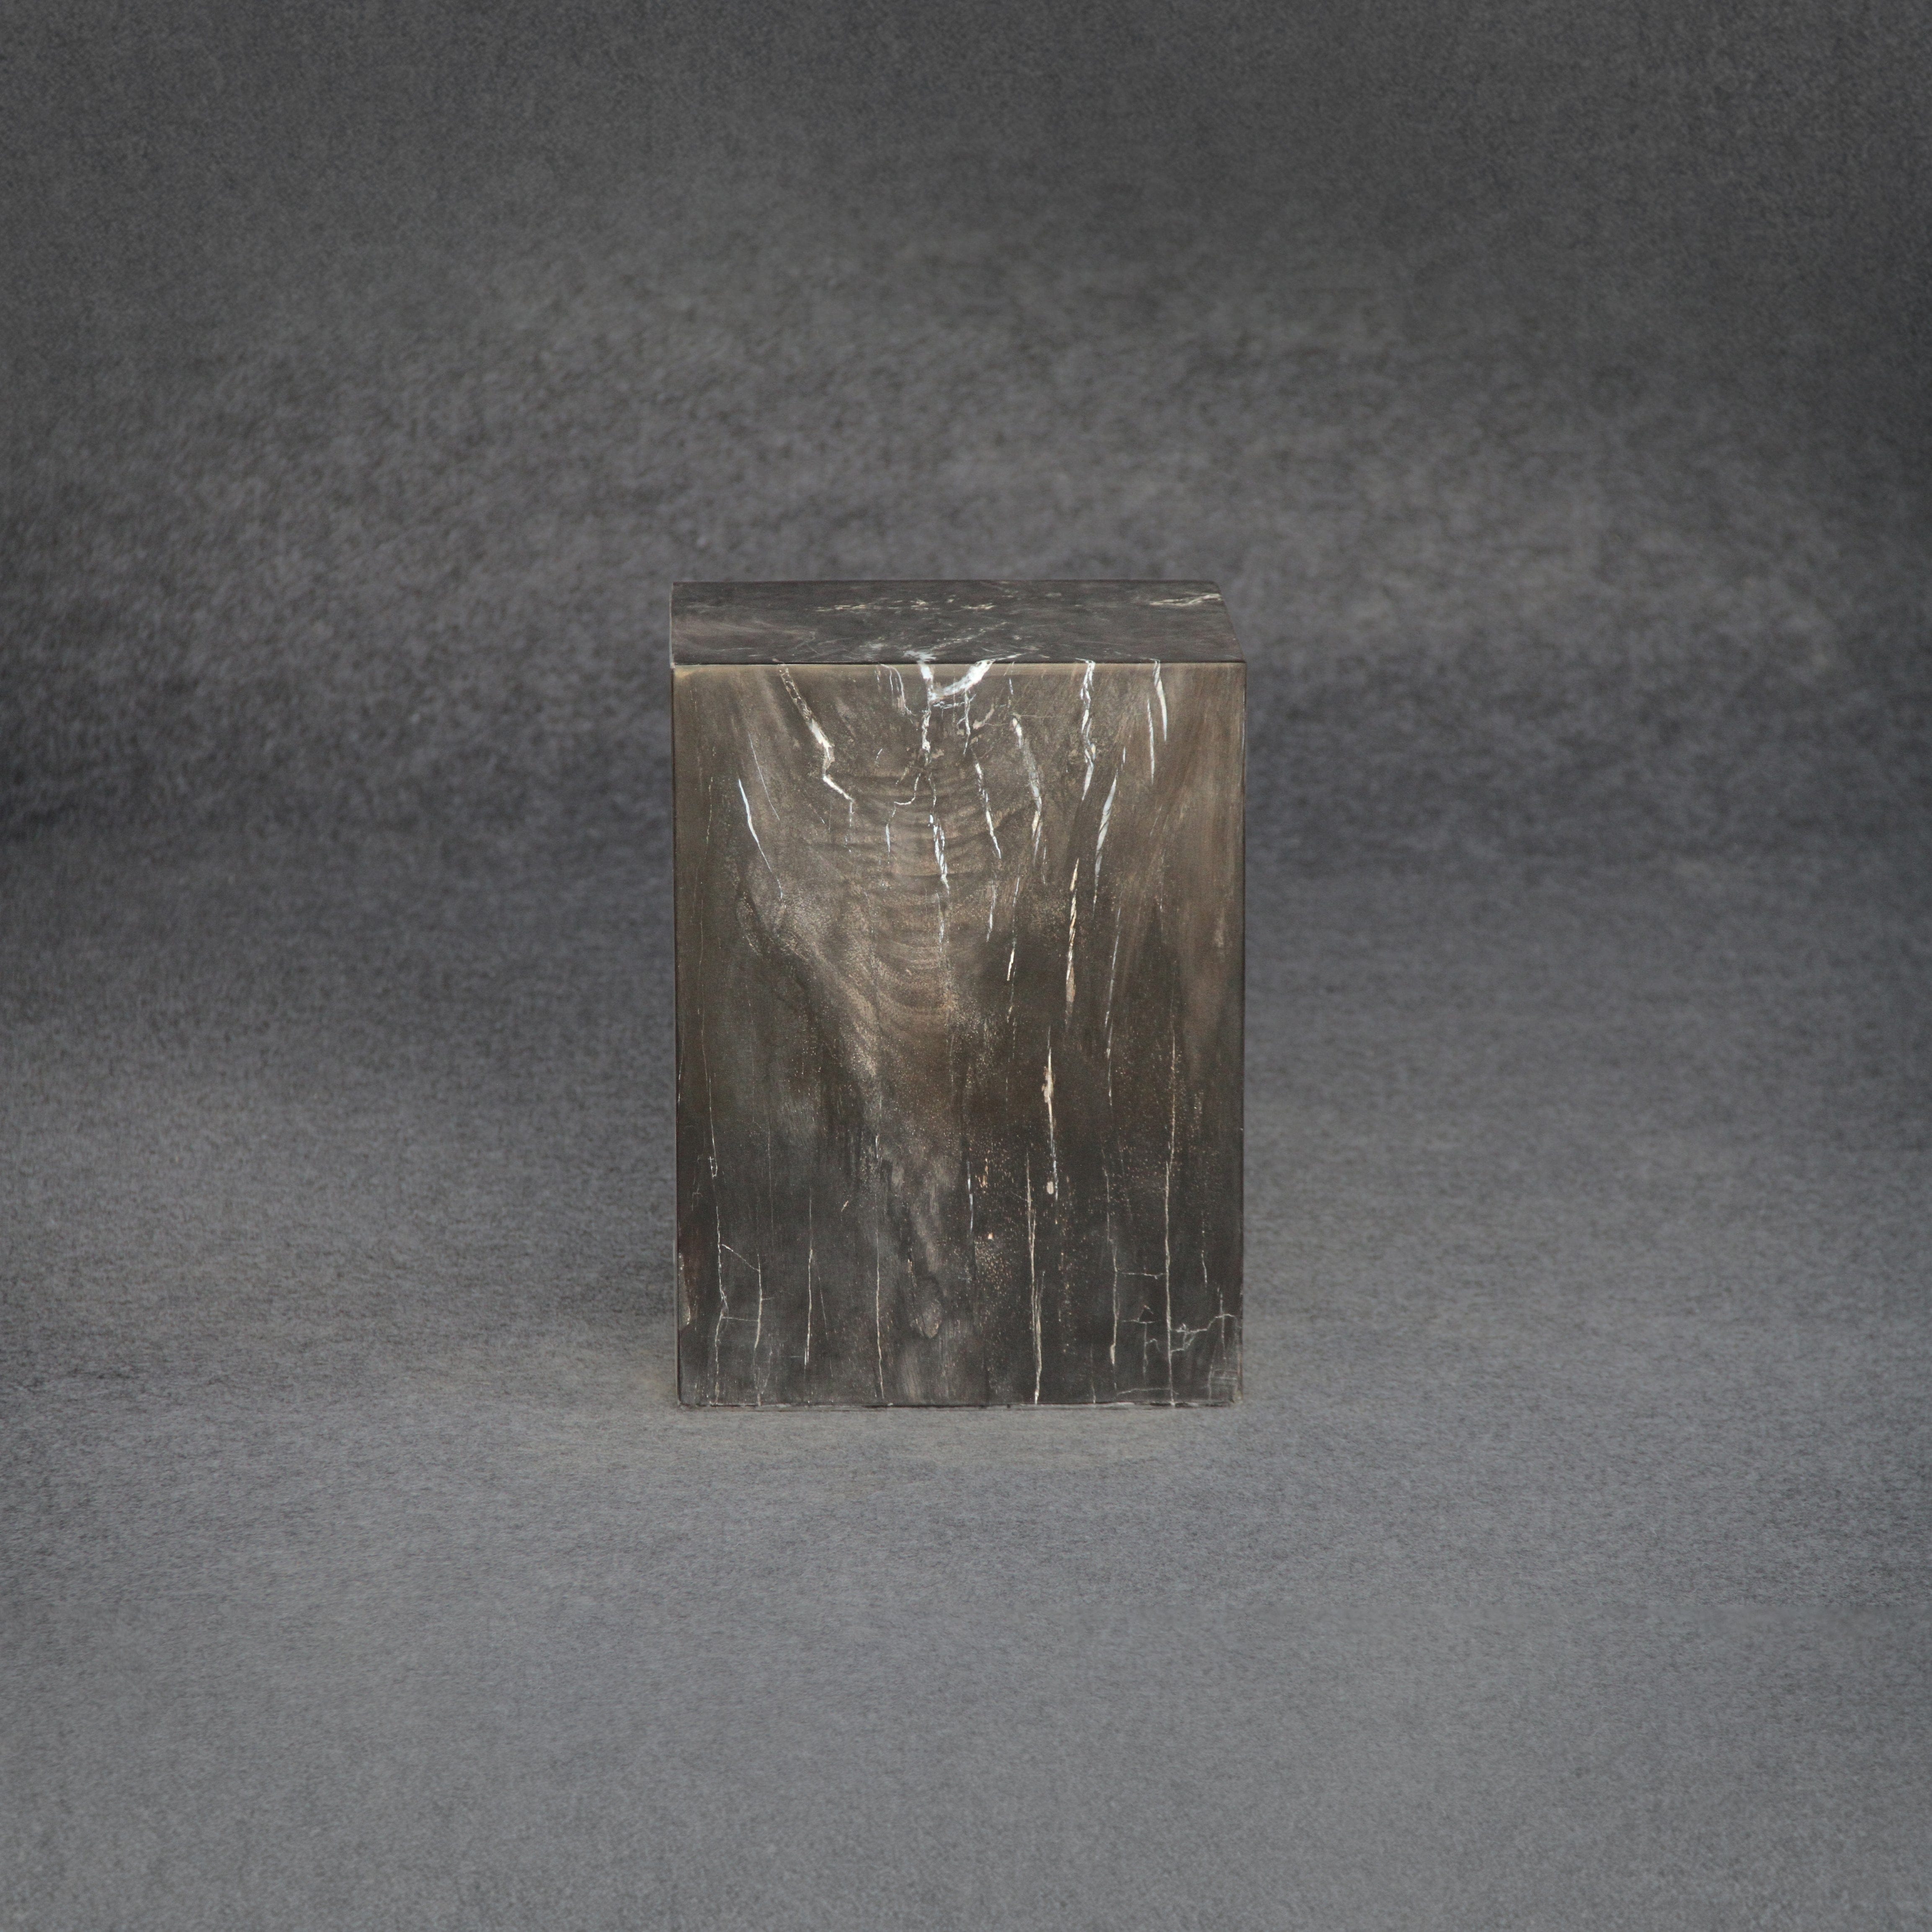 Kalifano Petrified Wood Petrified Wood Square Stump / Stool 18" / 236 lbs PWSS7200.001